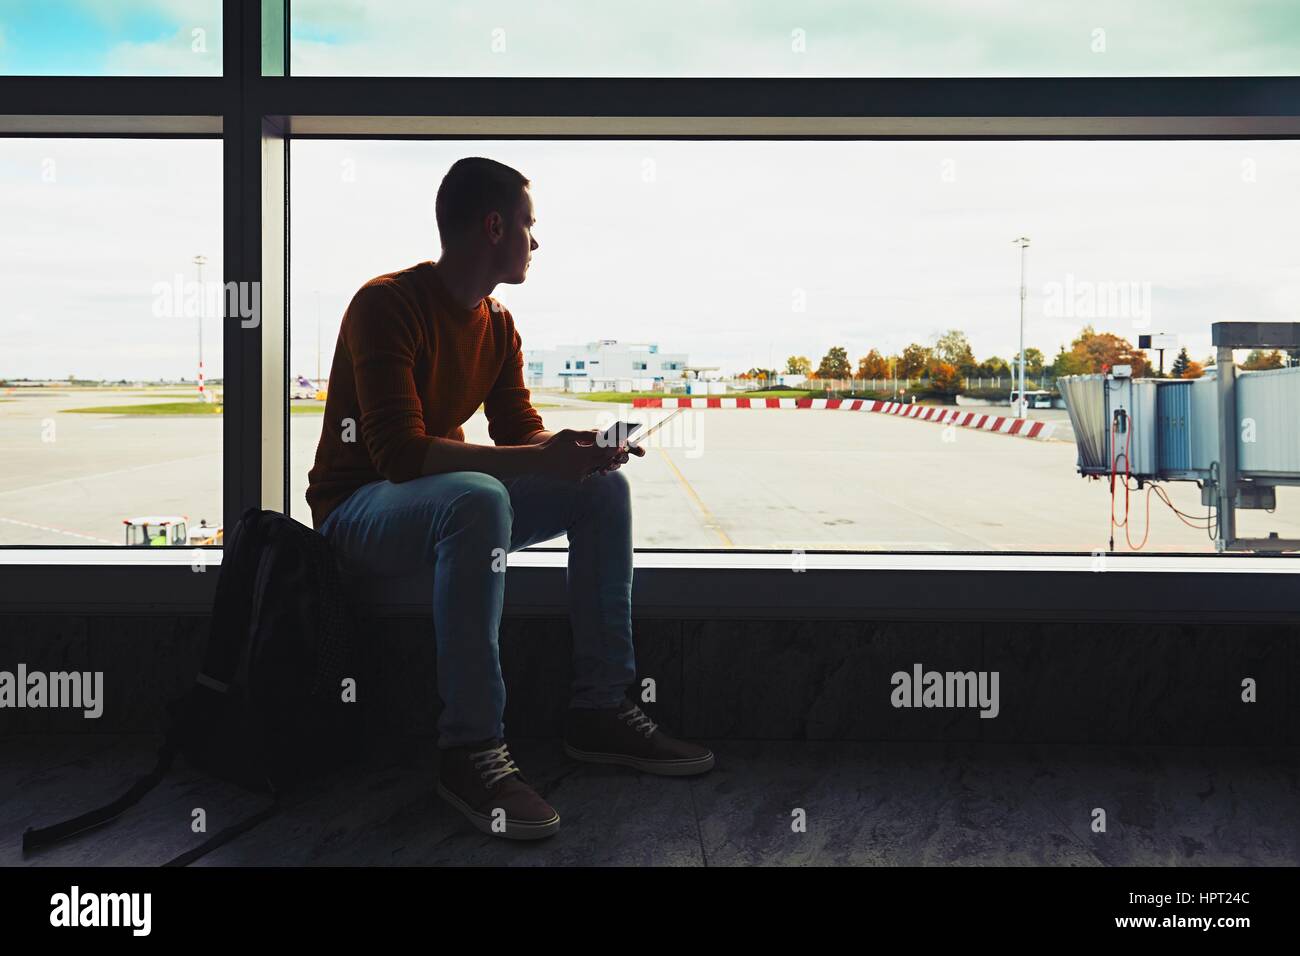 Silhouette des jungen Mannes mit Handy und Boarding pass in der hand warten im Flughafen terminal zum Flugzeug. Stockfoto